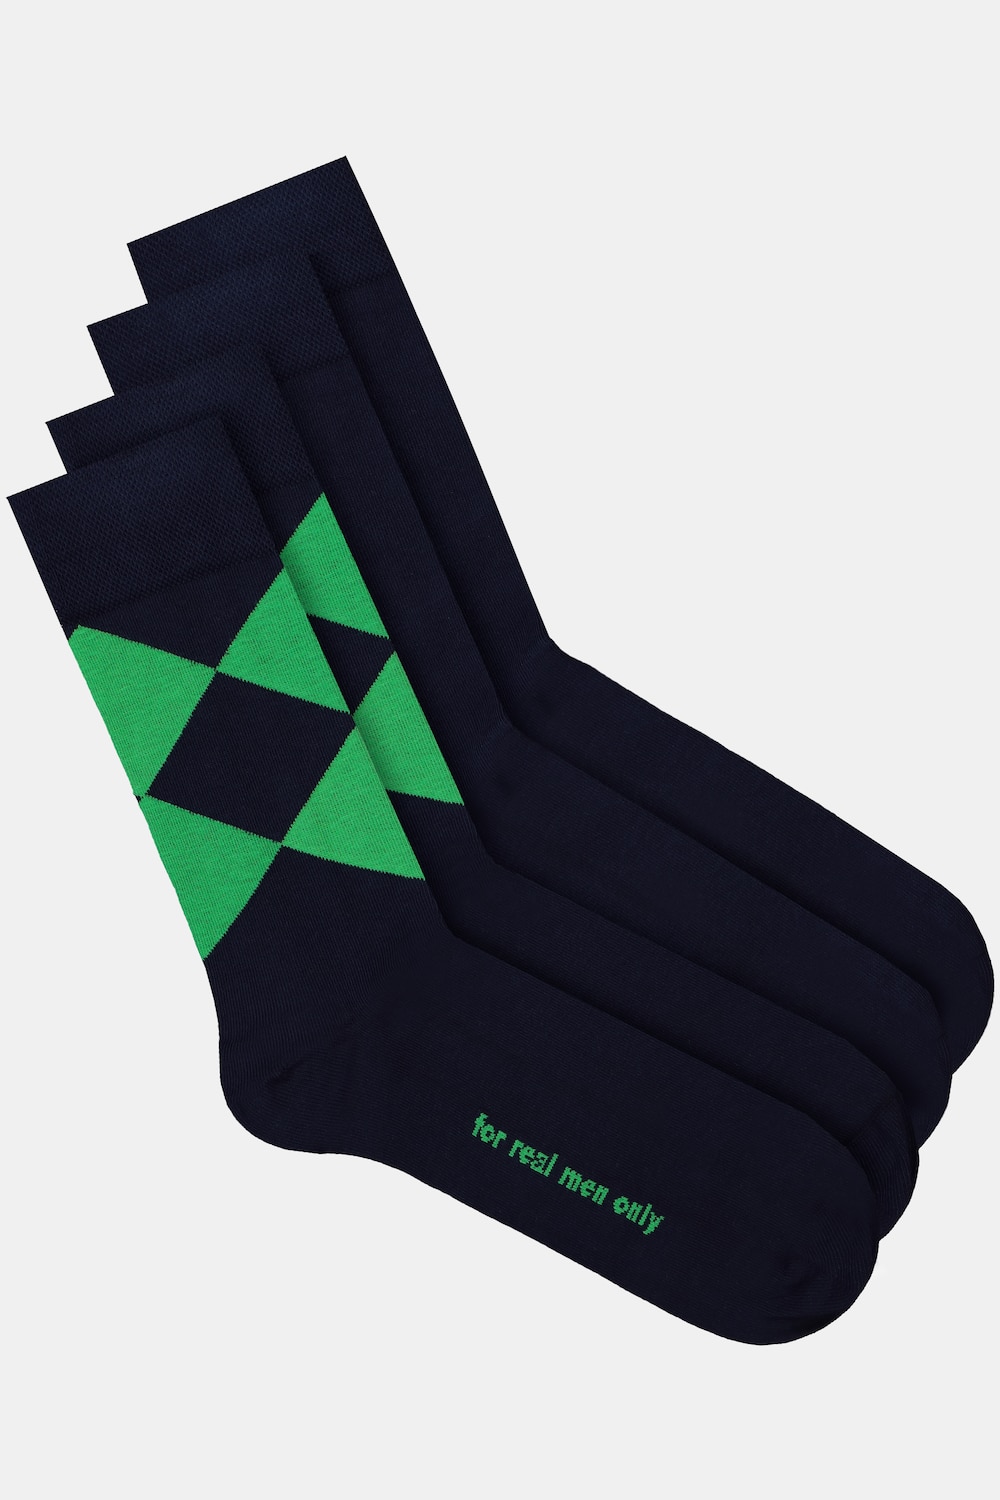 Grote Maten JP1880 sokken, Heren, groen, Maat: 51-53, Katoen/Synthetische vezels, JP1880